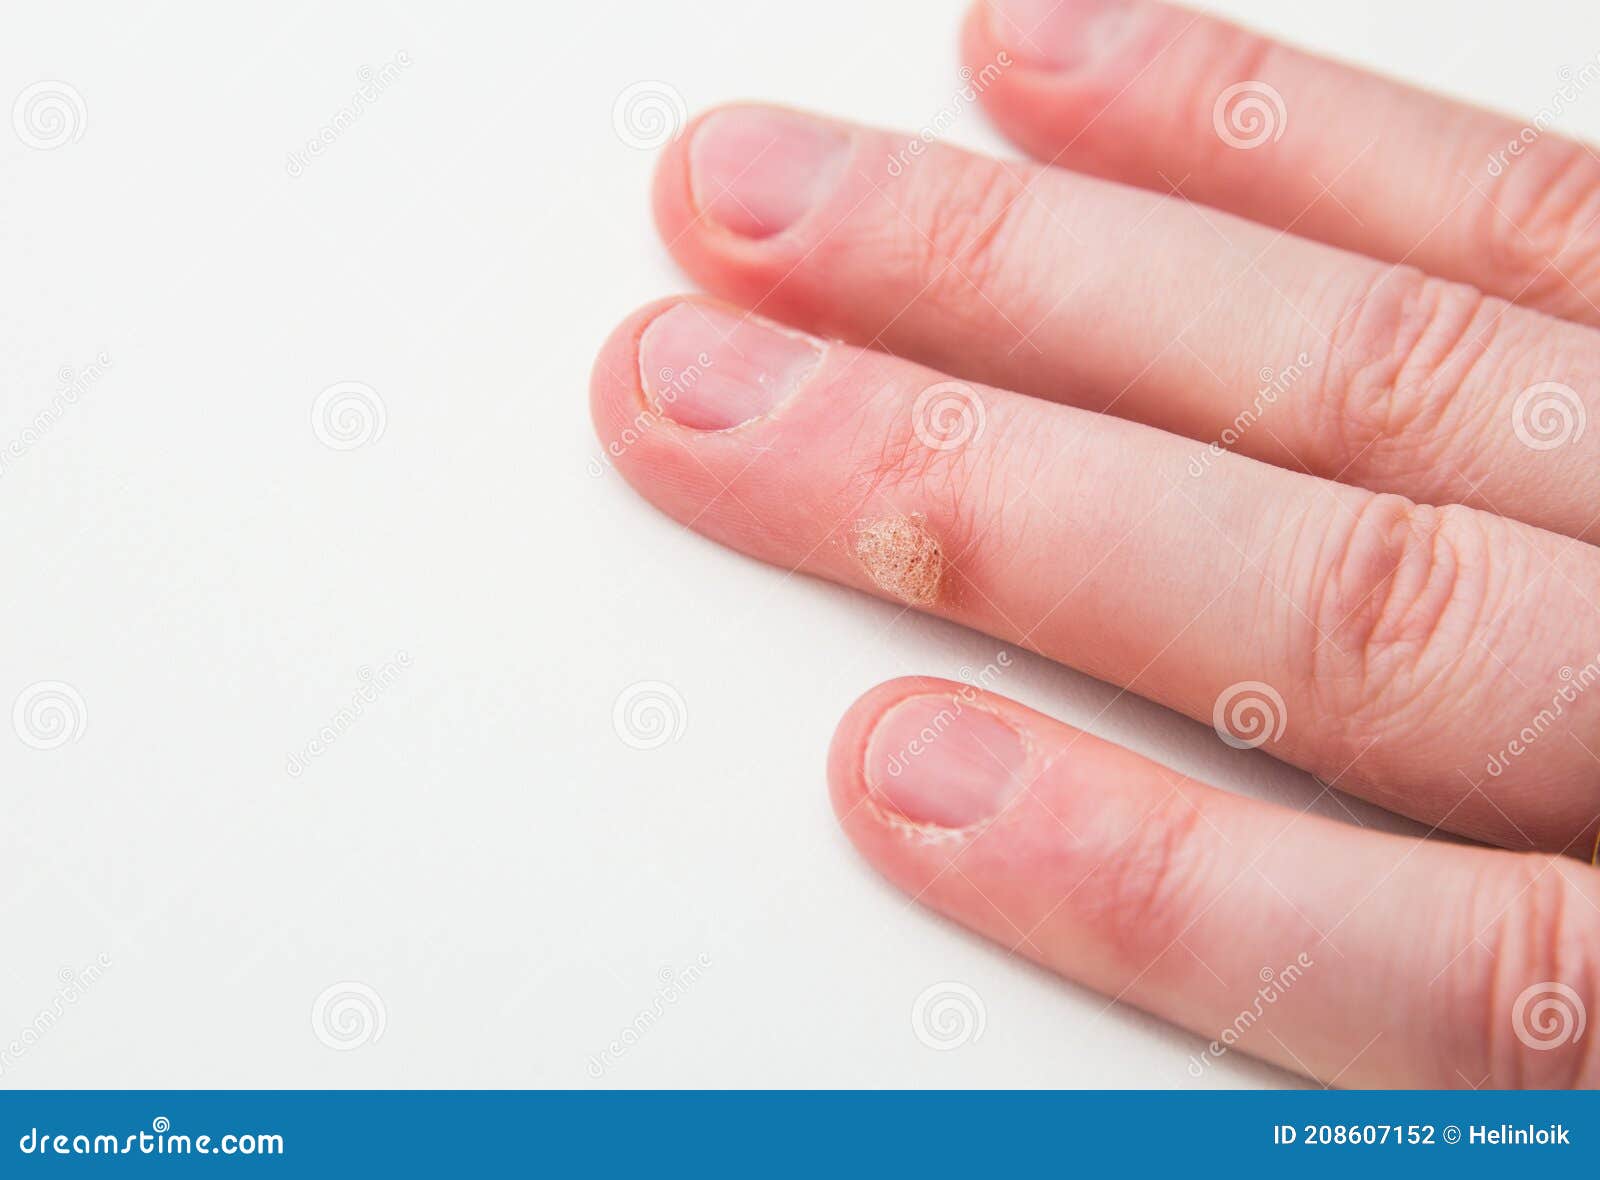 Hpv wart in finger, Papilloma on finger